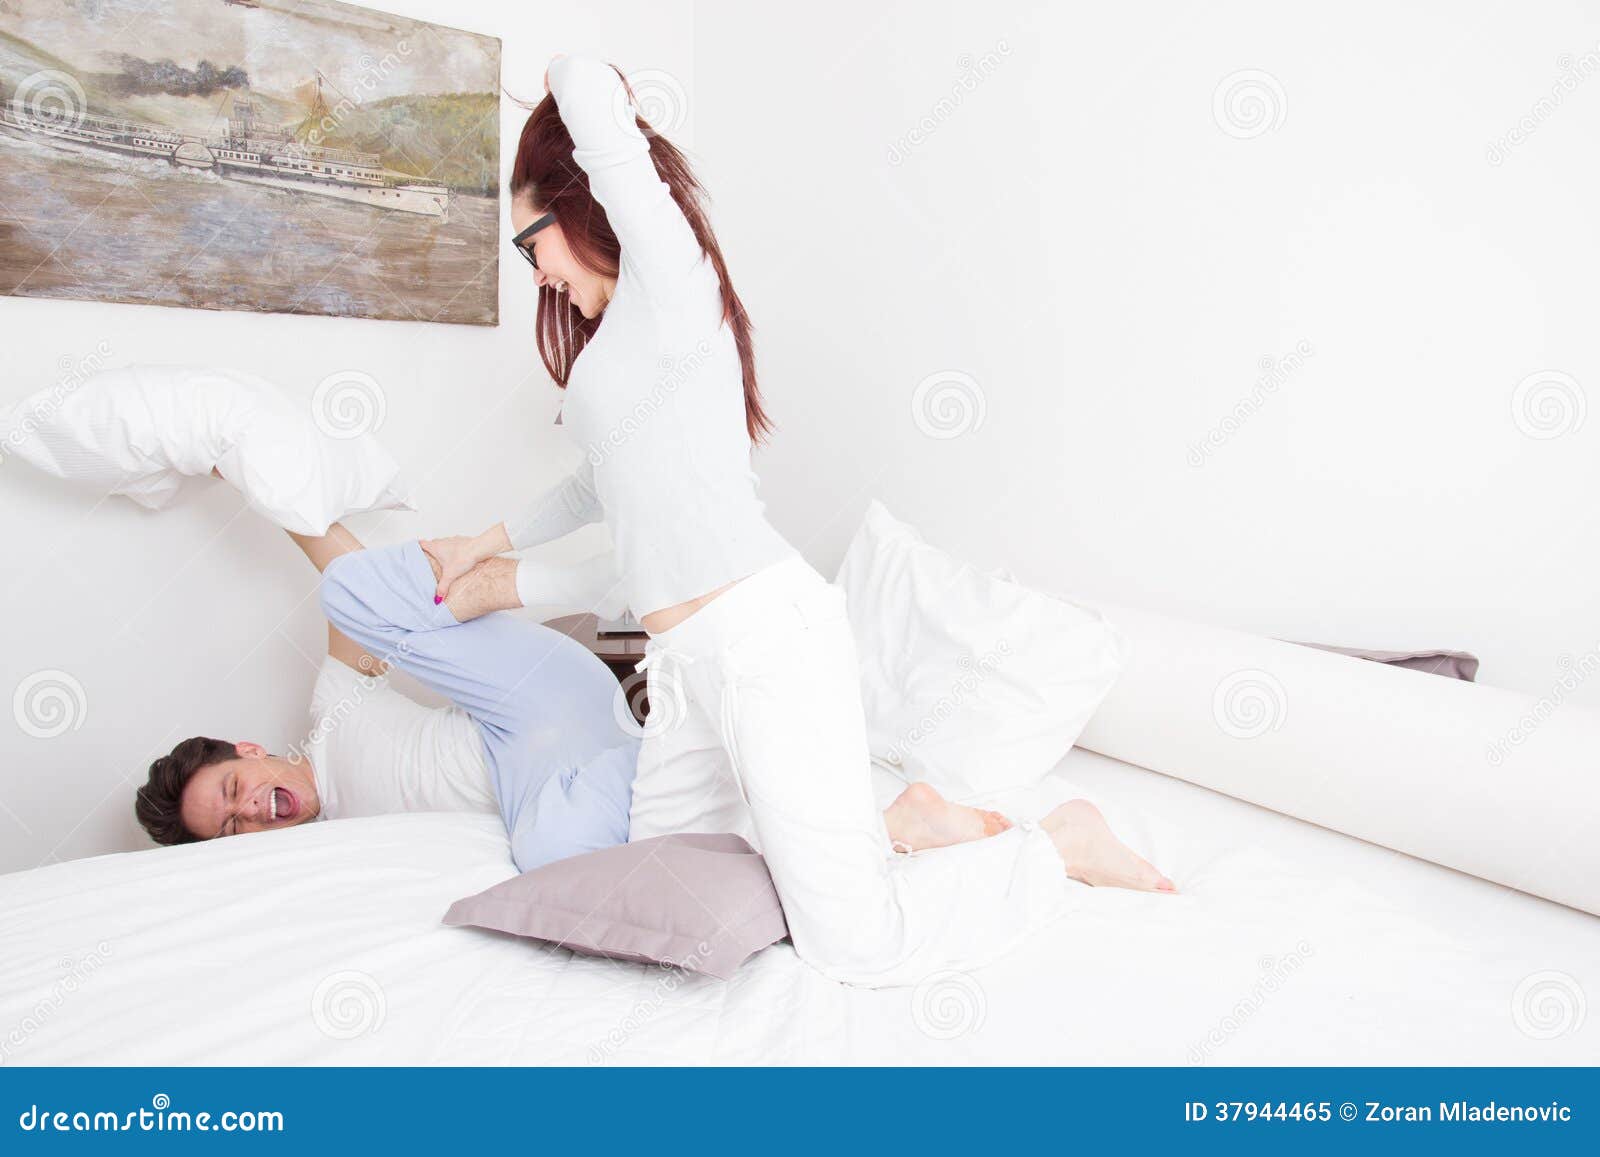 Бить подушку. Девушка бьет парня подушкой. Человек подушка. Девушка с большими подушками.